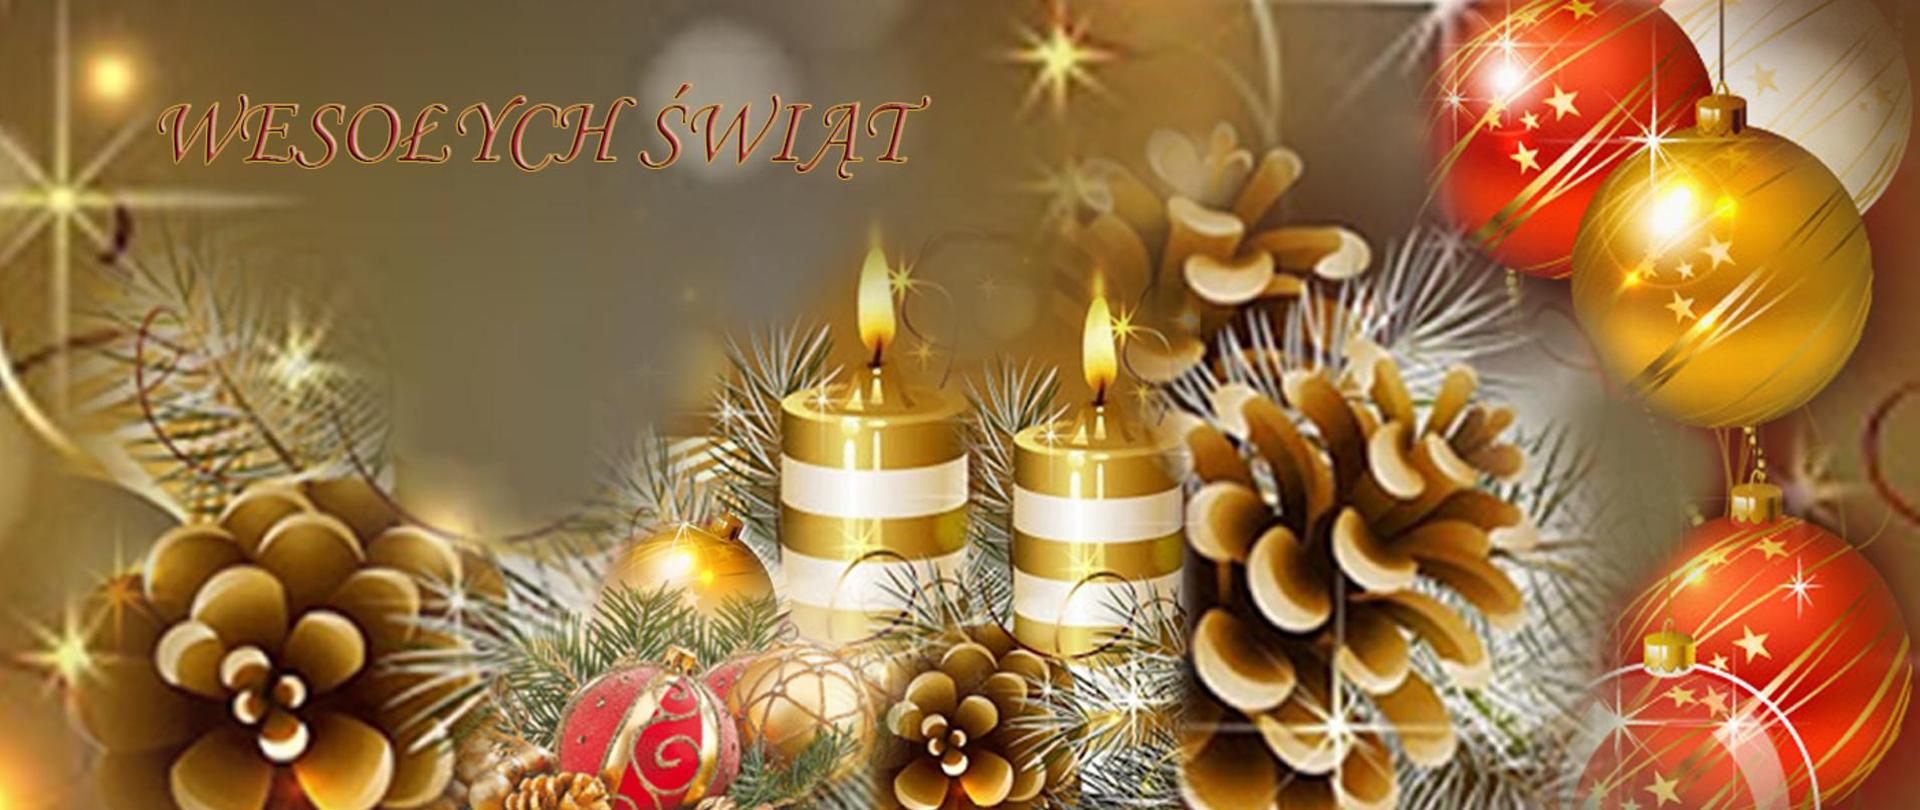 Wesołych Świąt – kompozycja świąteczna: świece, bombki, gałązki świerku, szyszki – przeważa kolor złoty